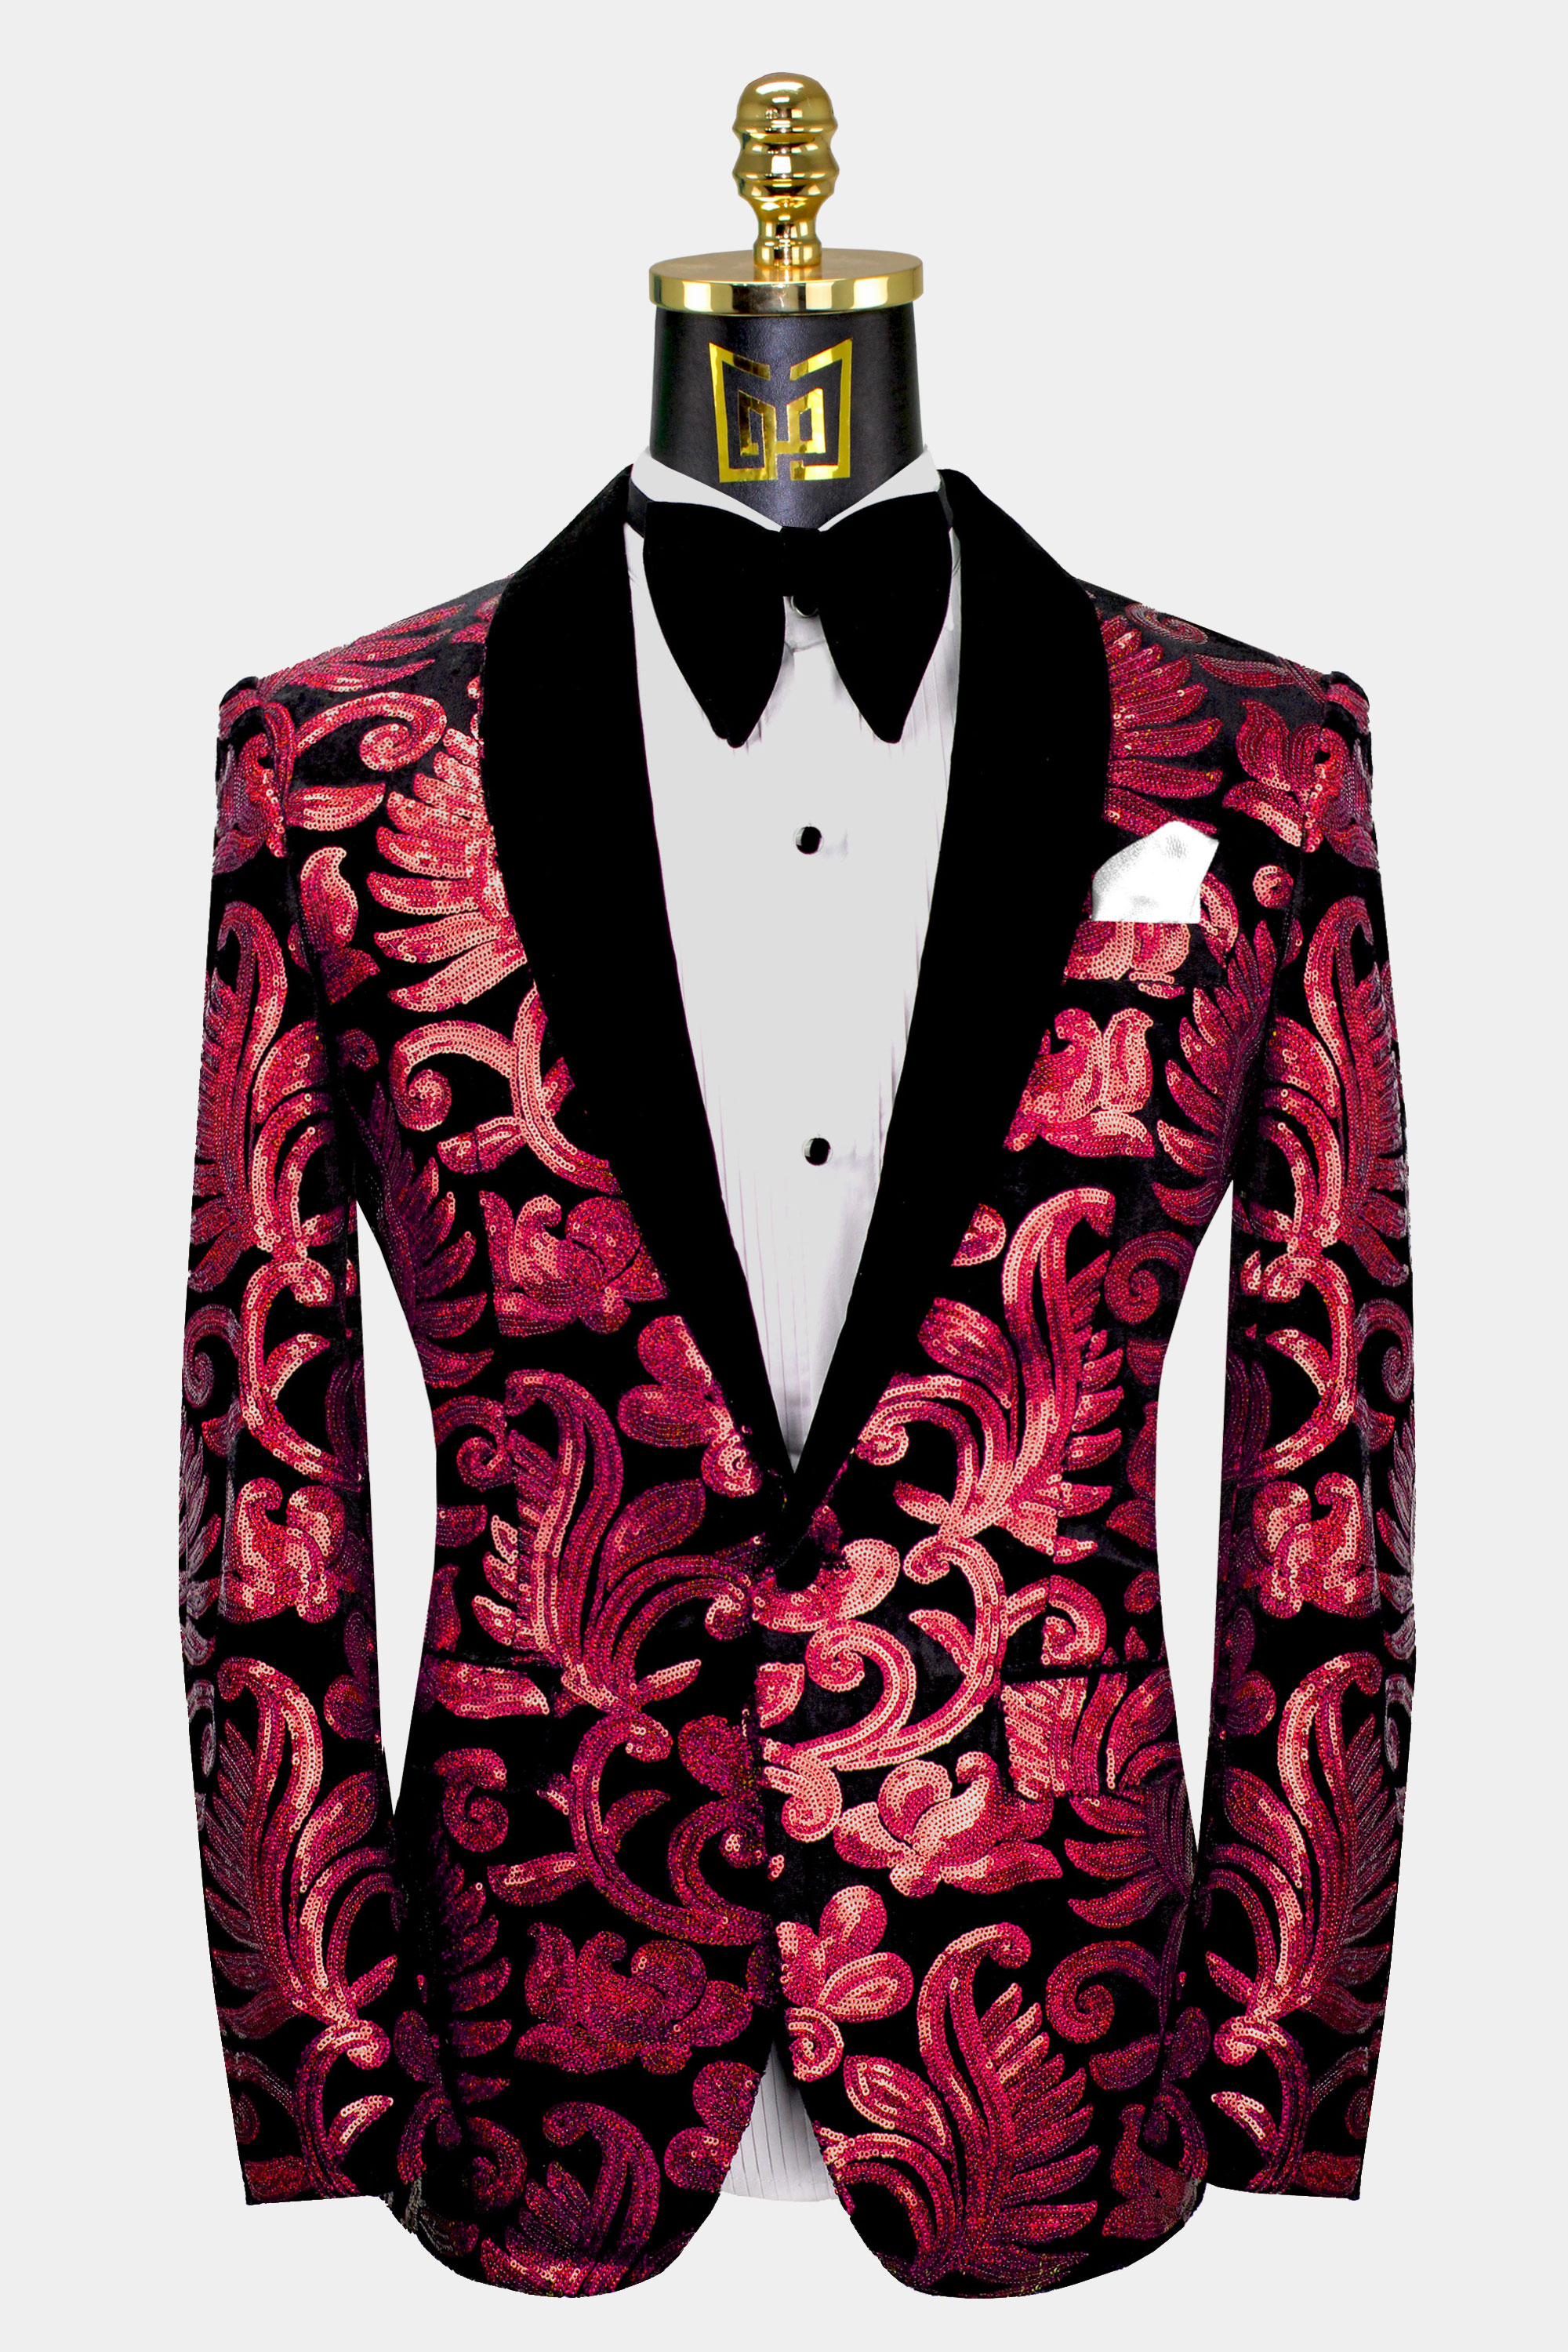 Mens-Red-and-Black-Tuxedo-Jacket-Prom-Suit-Wedding-Groom-Tuxedo-from-Gentlemansguru.com